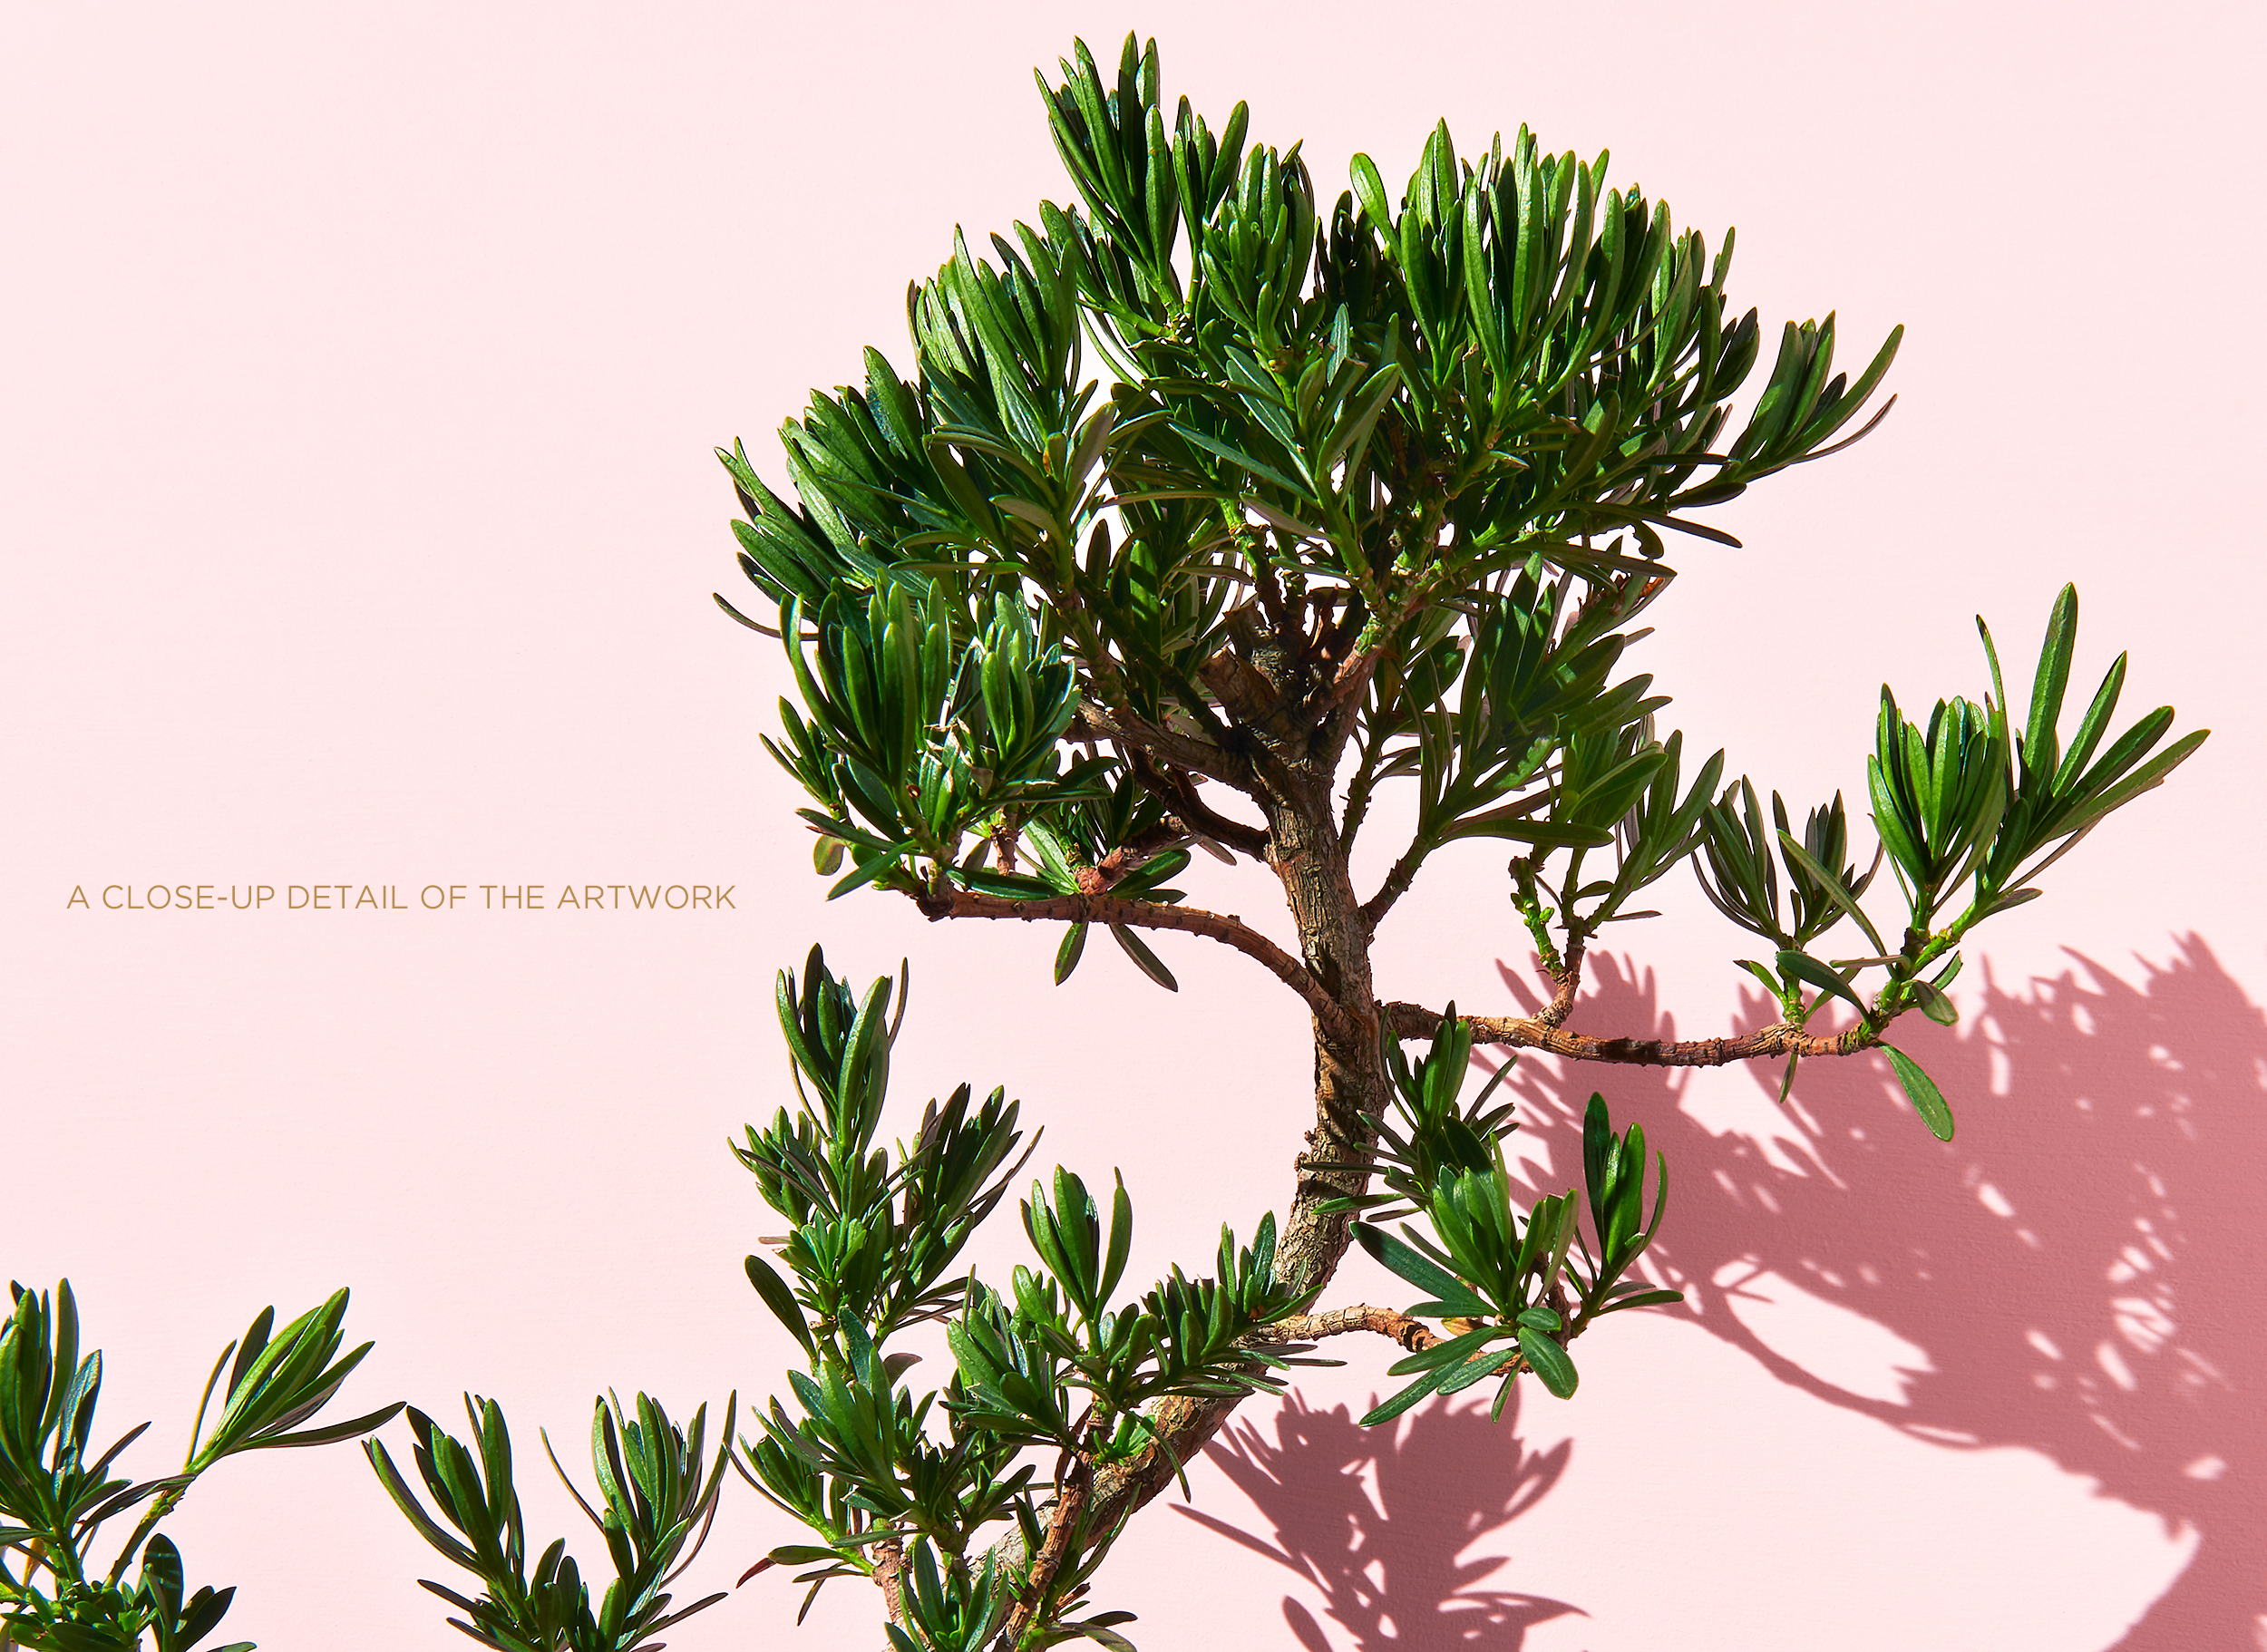 <a href="https://mrsteel.london/shop/bonsai-on-pink-ii/">REVEAL DETAILS / BUY</a> 